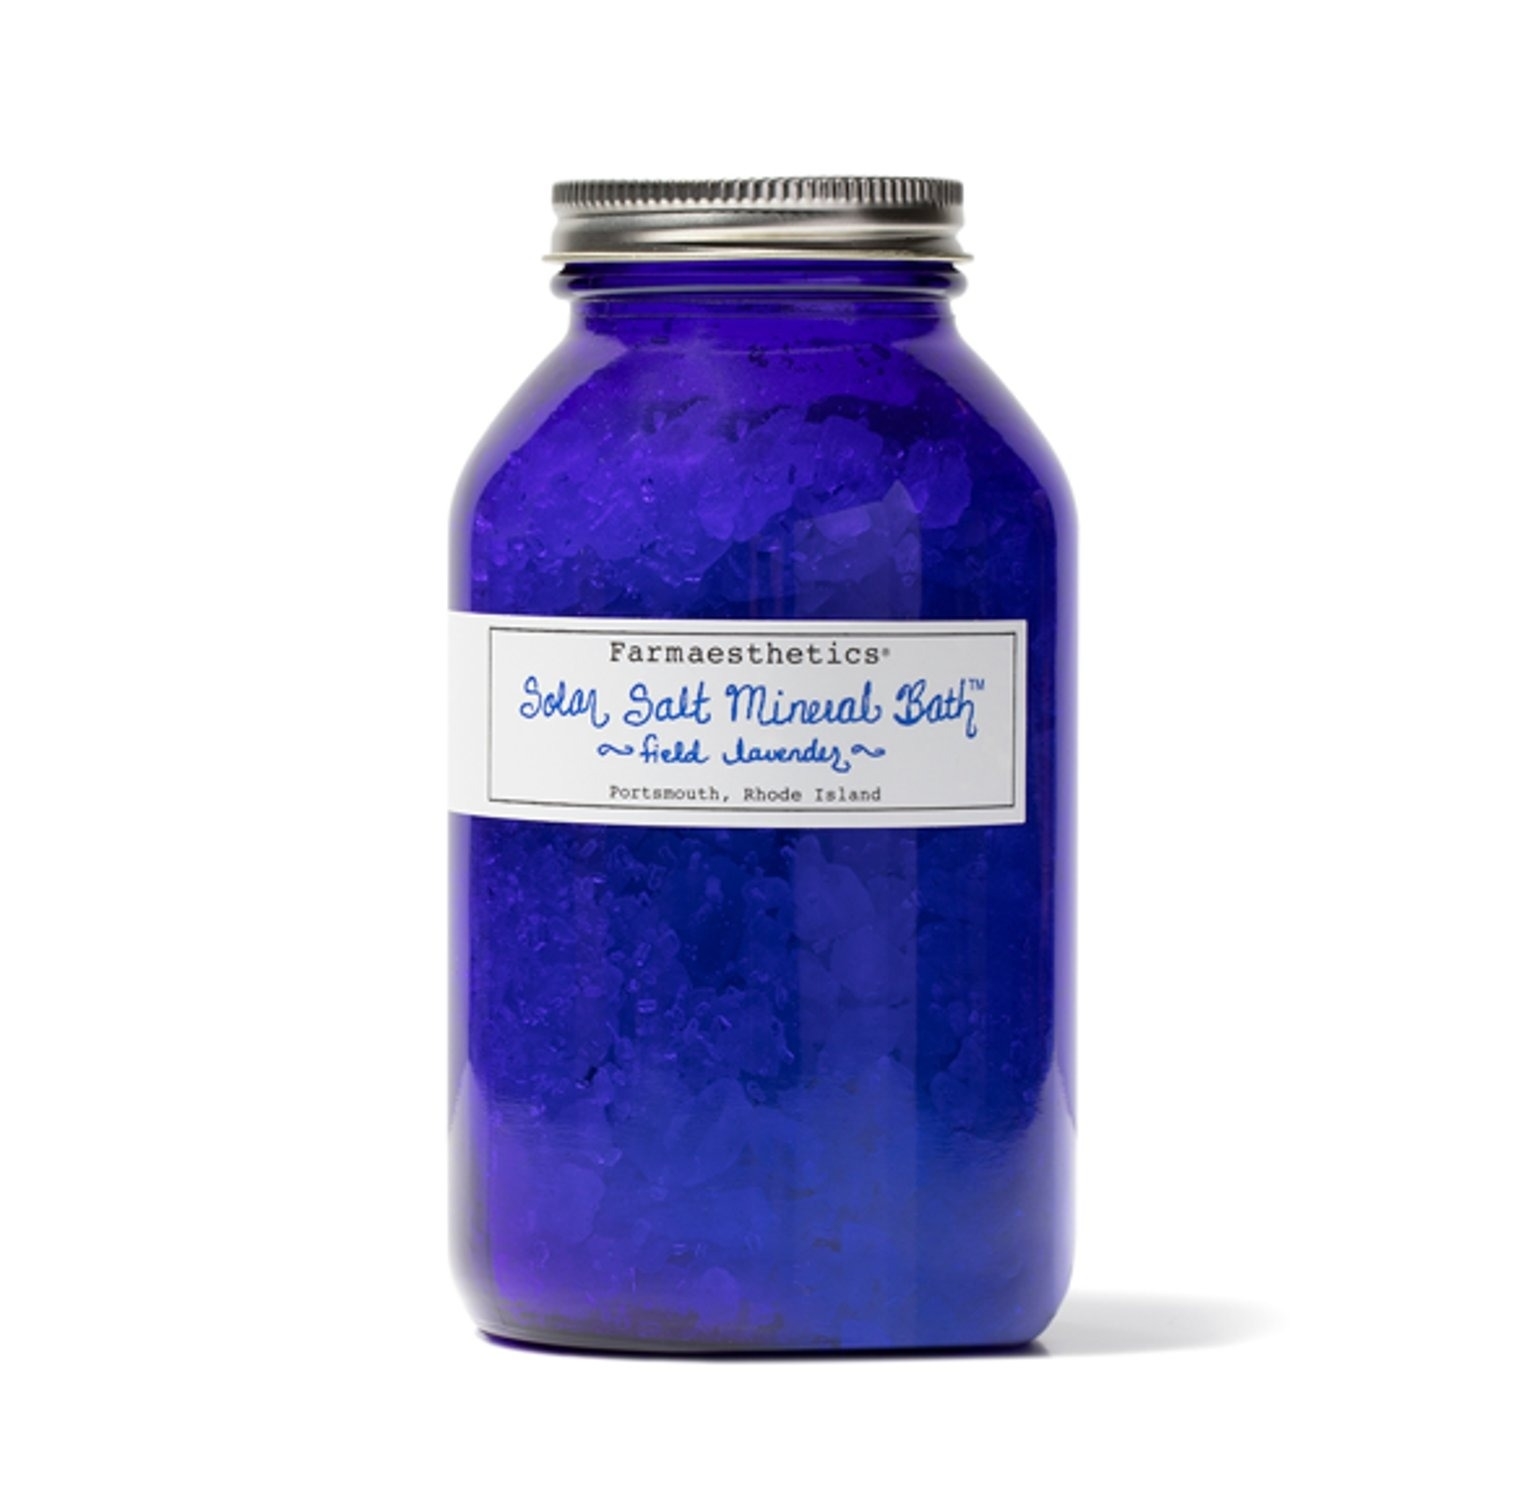 the blue glass jar of bath salts